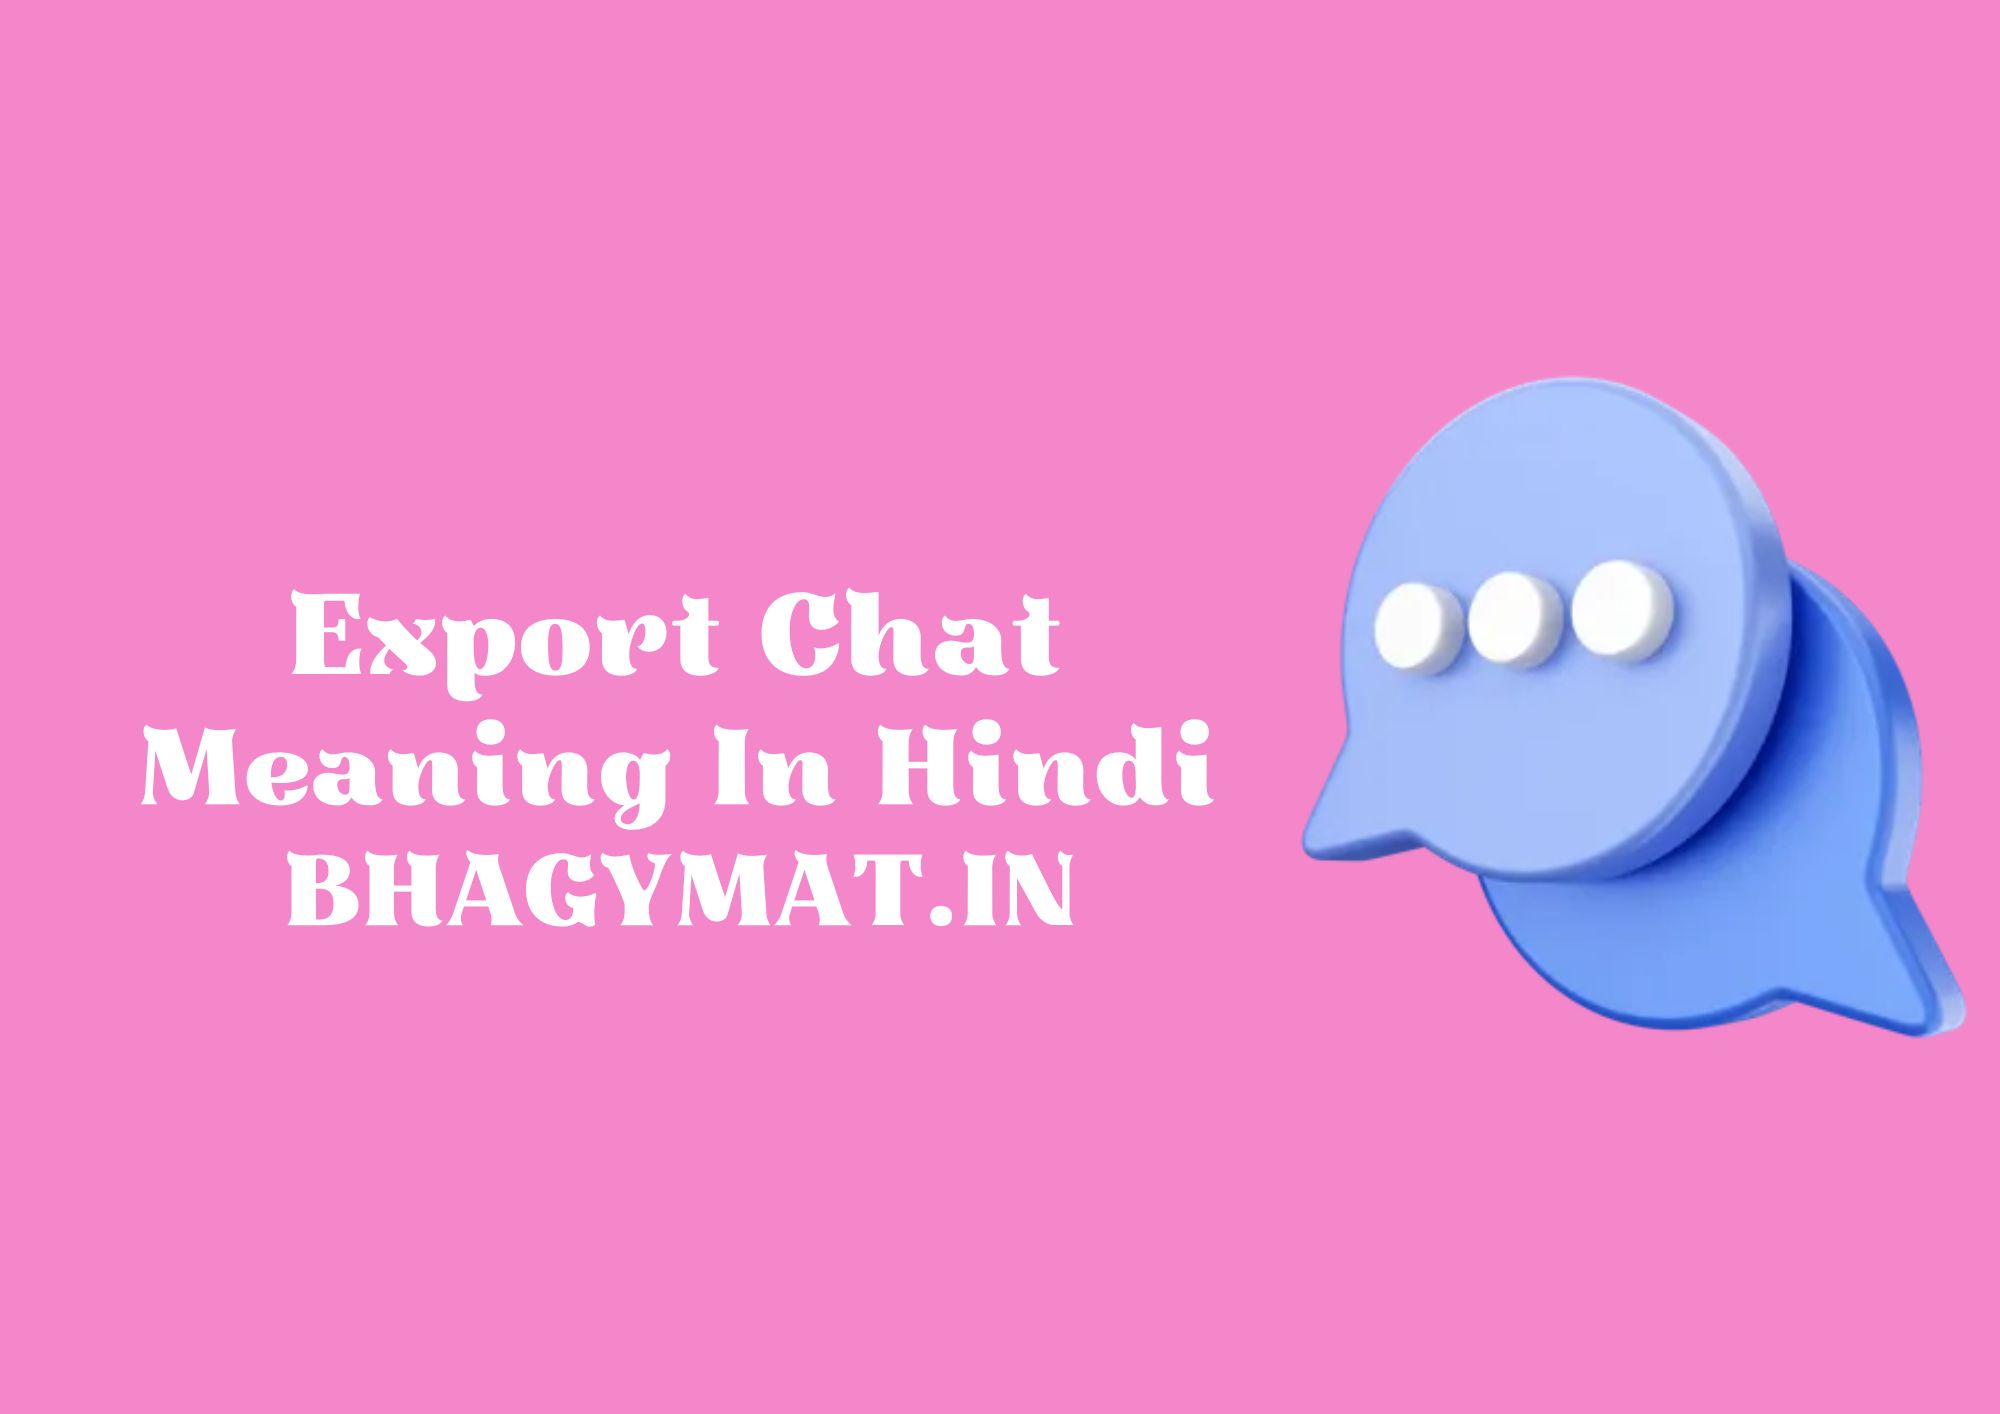 एक्सपोर्ट चैट का मतलब क्या है? (What Is Export Chat Meaning In Hindi) - Meaning Of Export Chat In Hindi